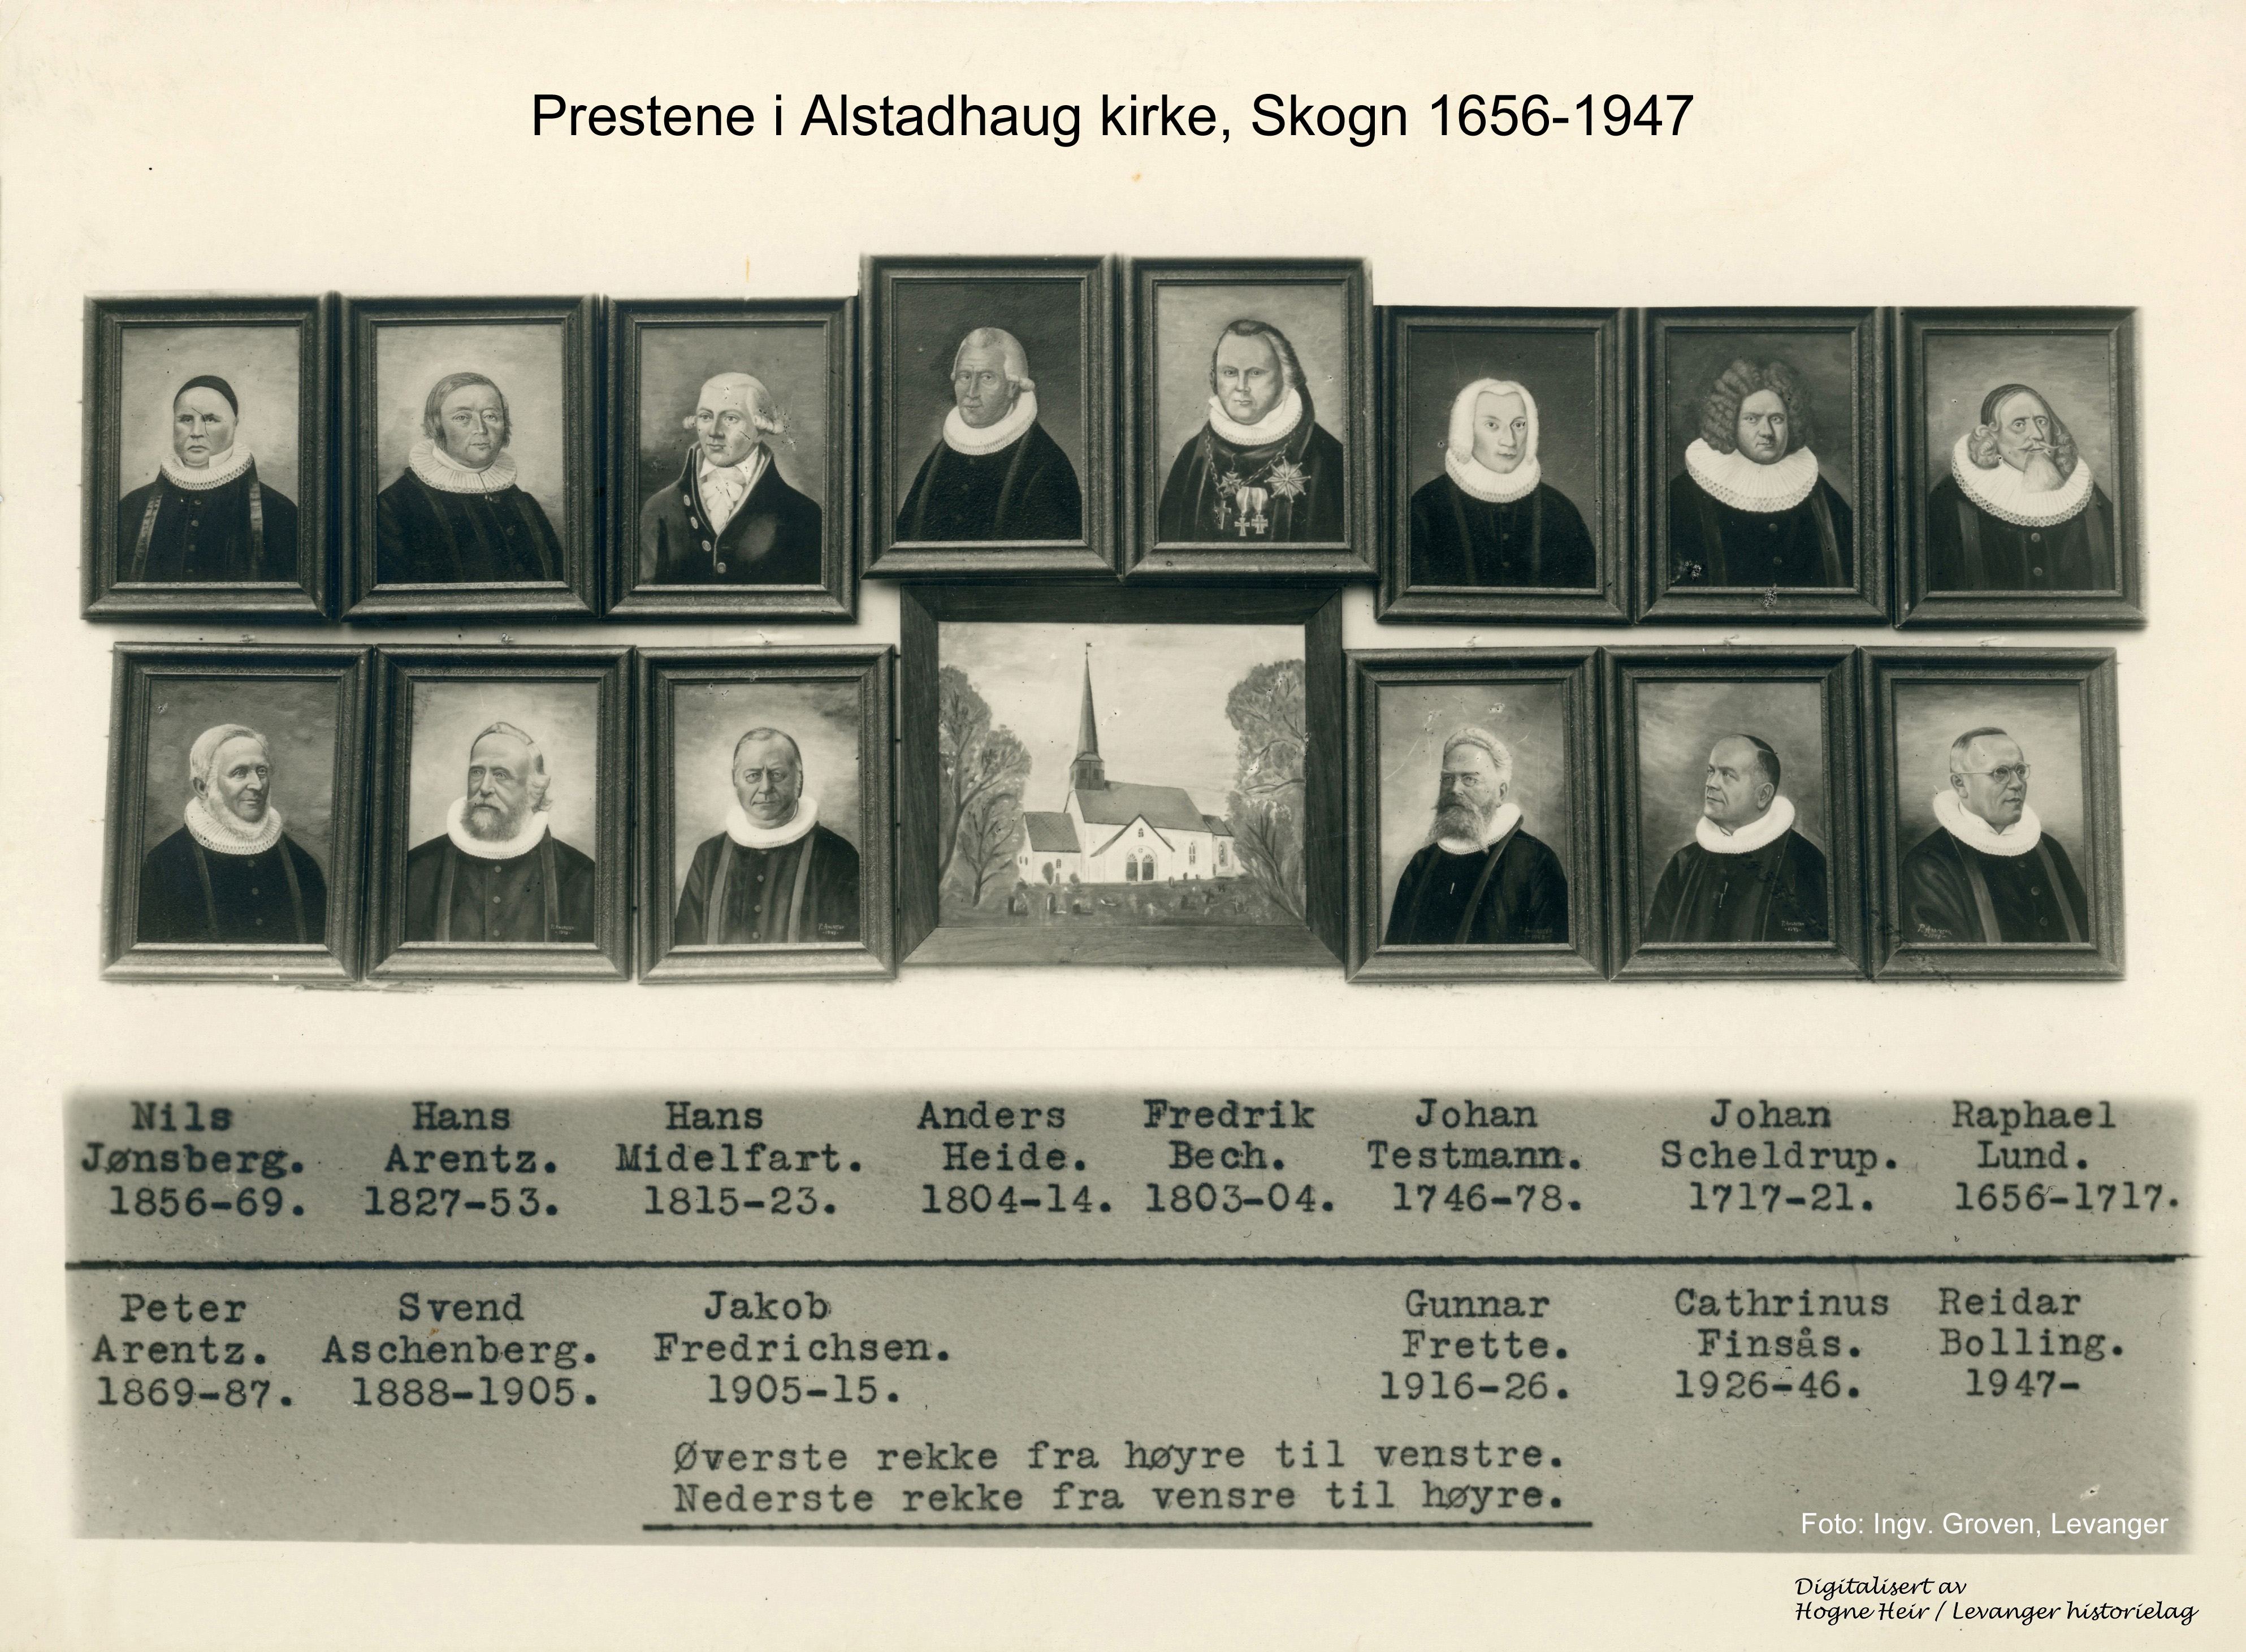 Prestene i Alstadhaug kirke, Skogn 1656-1947. Foto Ingv. Groven.